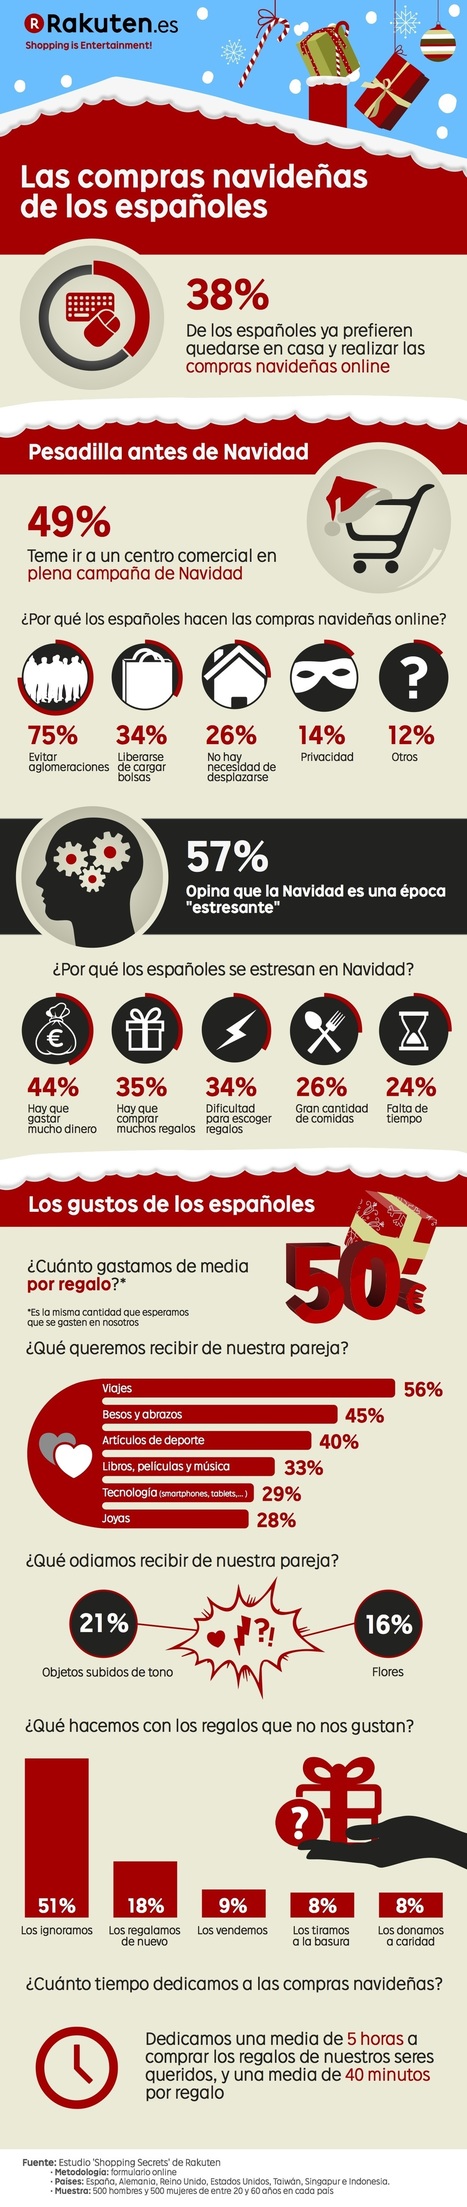 Las compras navideñas de los españoles #infografia #infographic #marketing | Seo, Social Media Marketing | Scoop.it